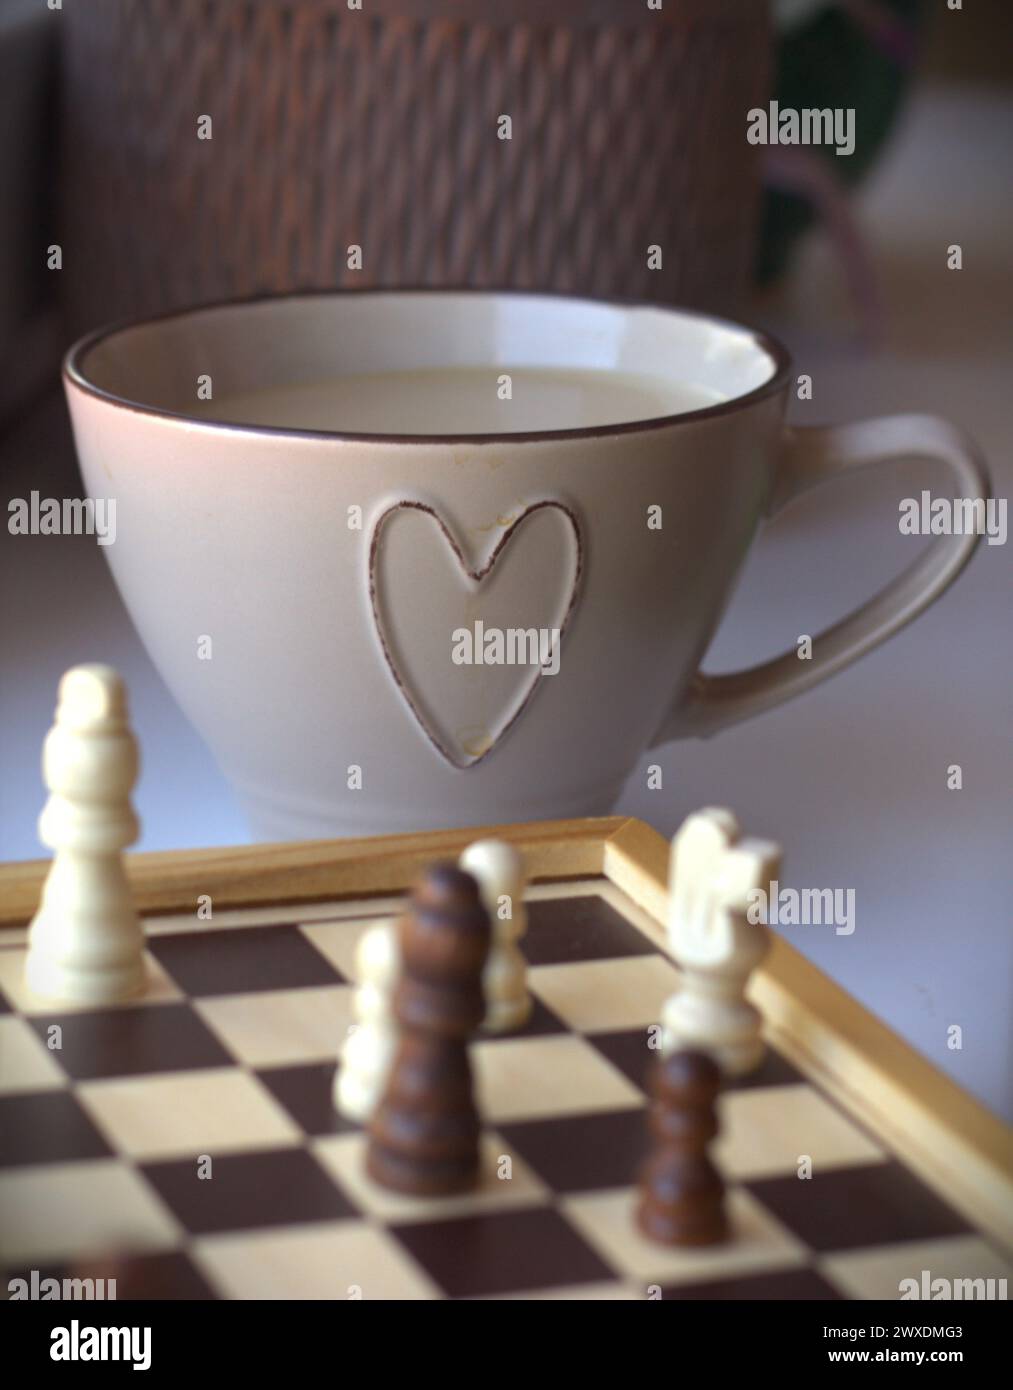 Jeu d'échecs - échiquier avec les pièces d'échecs et une tasse à café décorée avec un symbole de coeur Banque D'Images